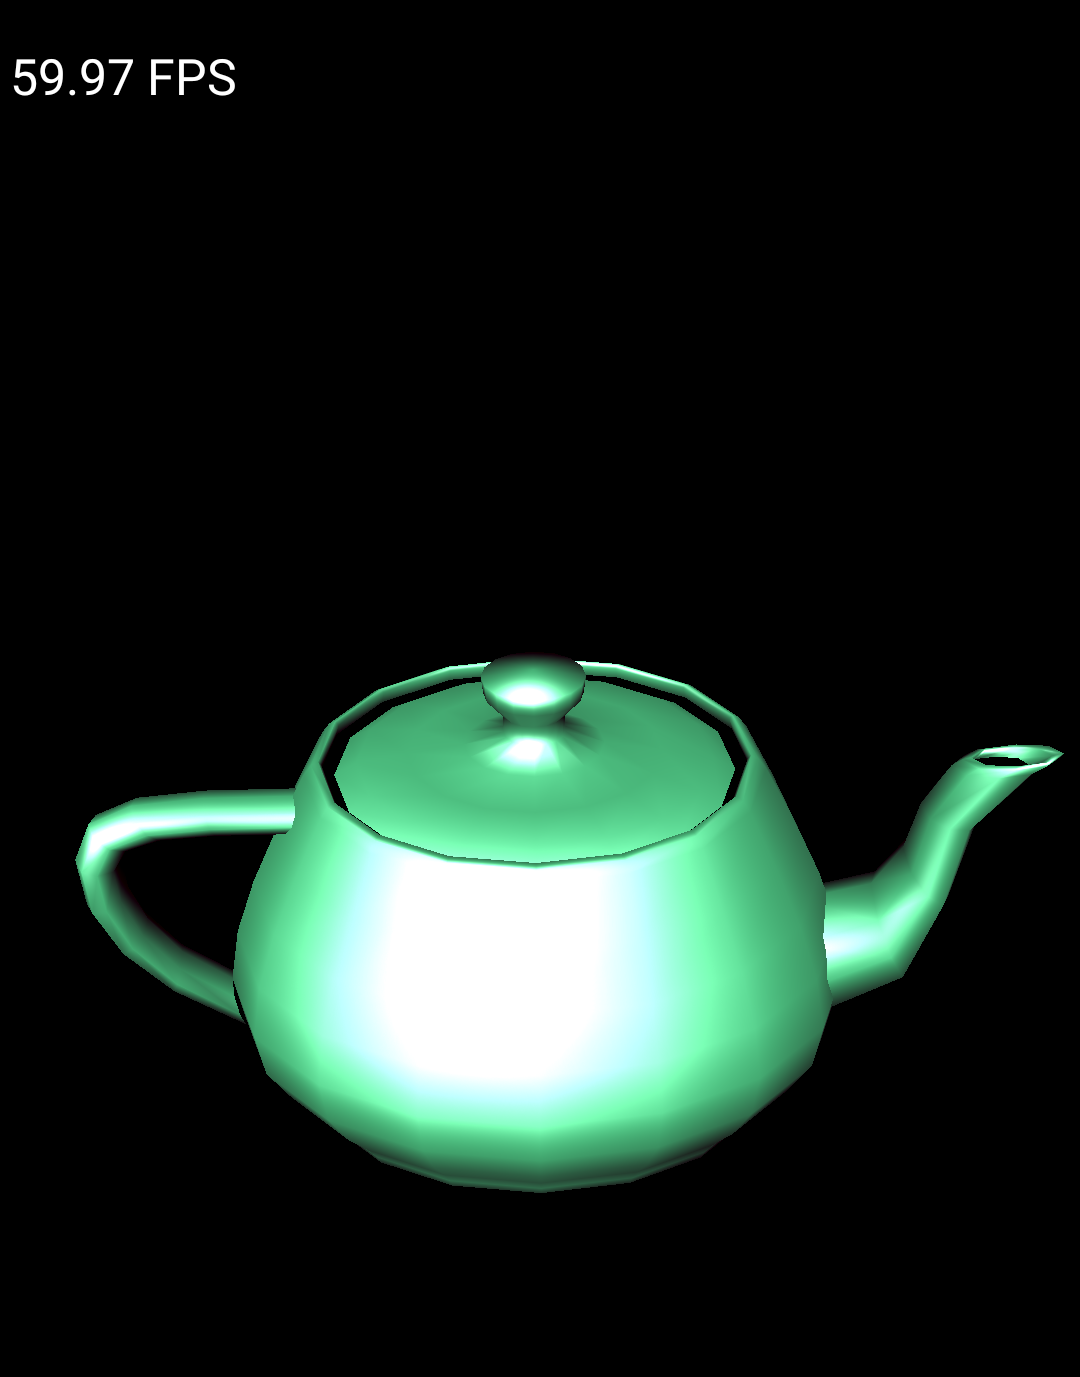 Teapot-Beispiel wird in einem Emulator ausgeführt